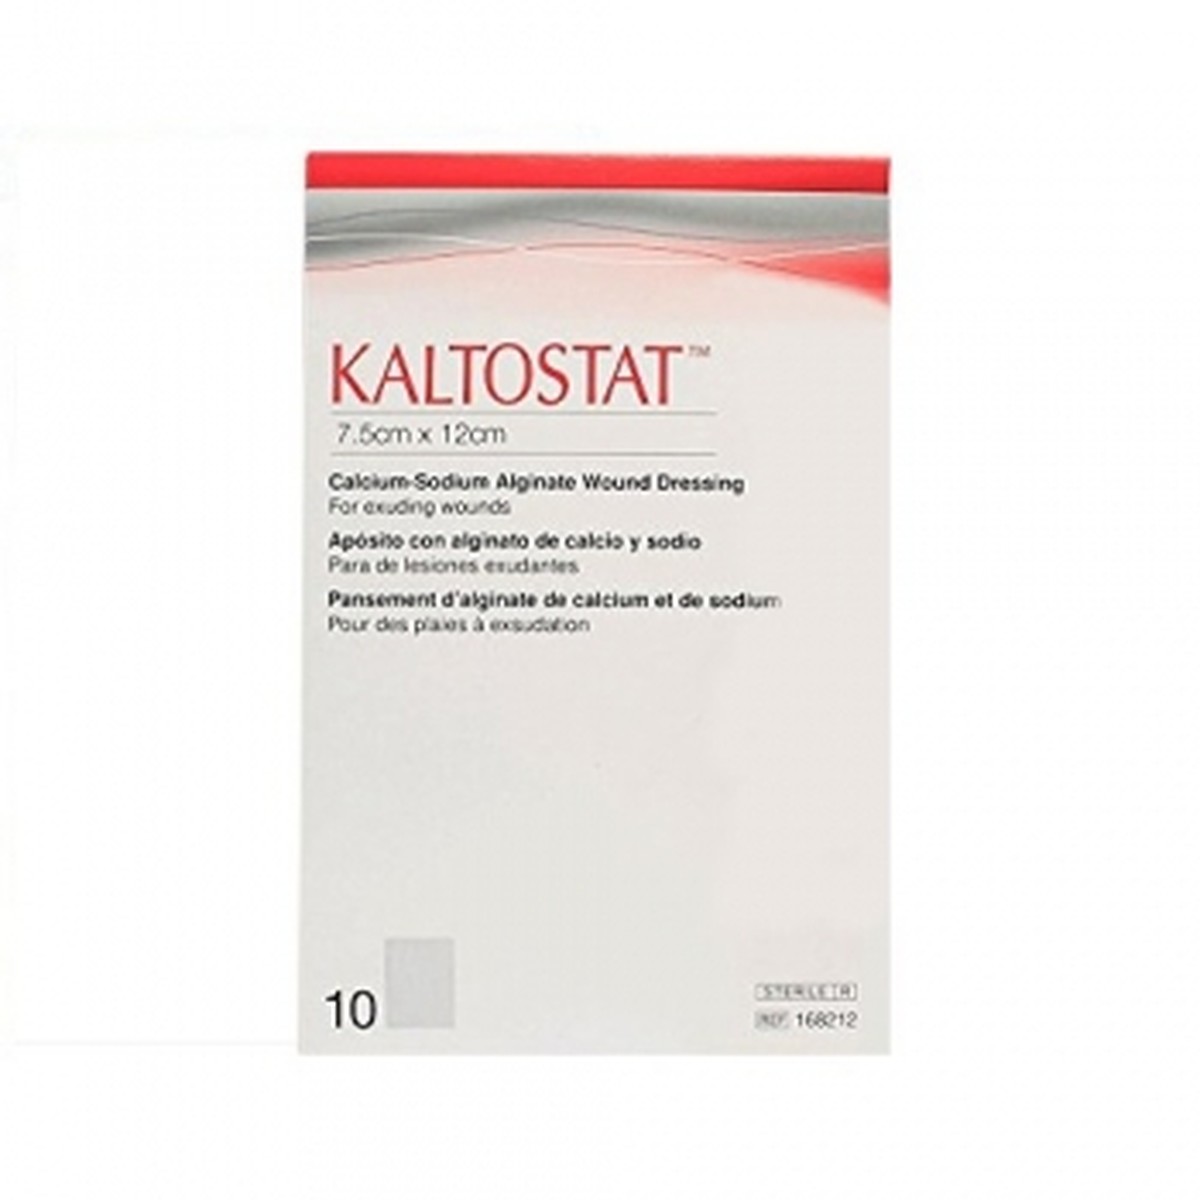 Foto do produto Kaltostat Curativo de Alginato de Cálcio e Sódio- 7,5x12cm 